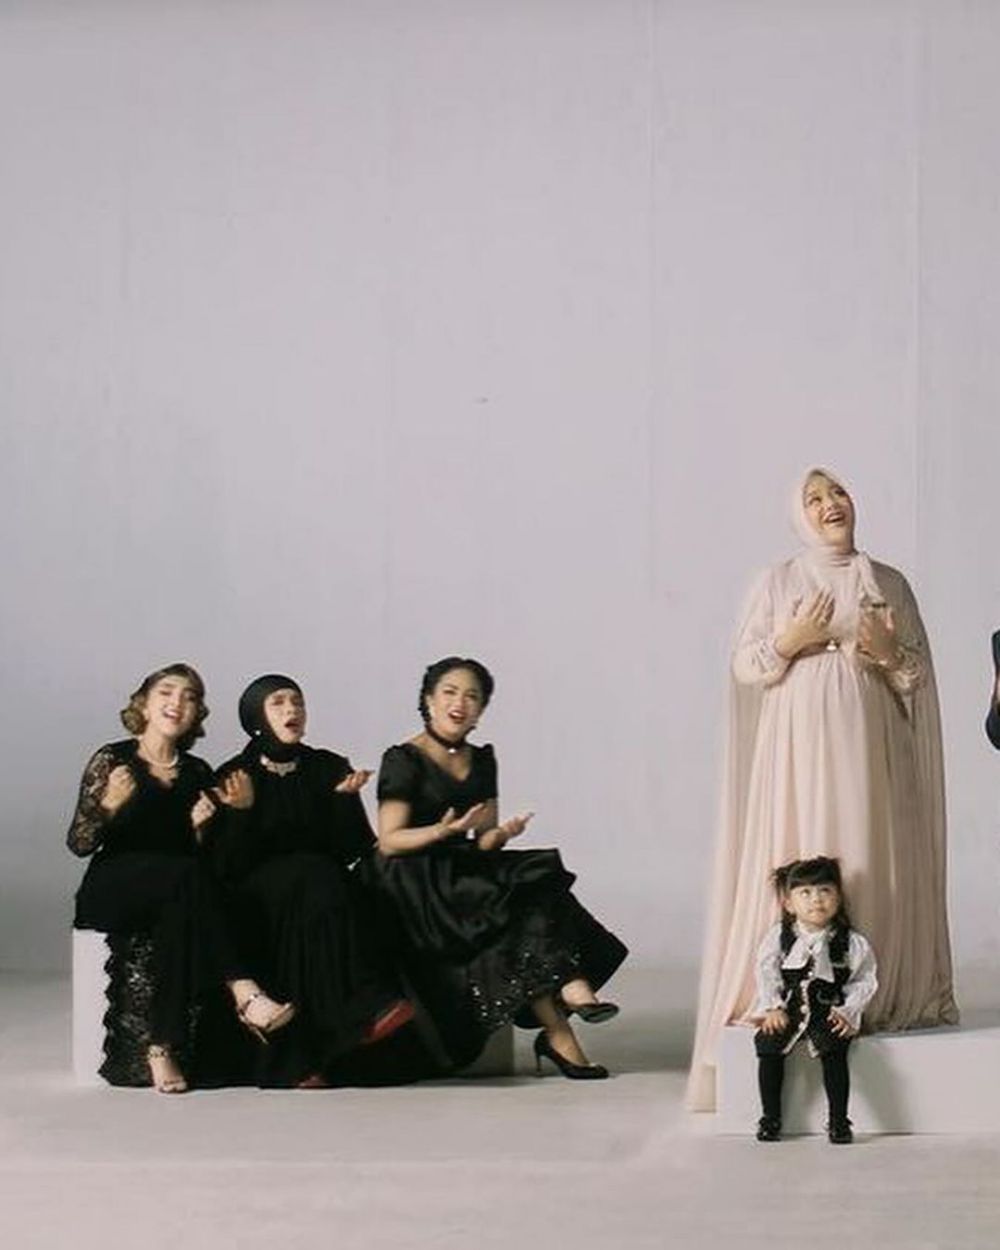 Intip 11 momen 3 keluarga Aurel Hermansyah syuting video klip, penampilan Ashanty mirip Rose Titanic